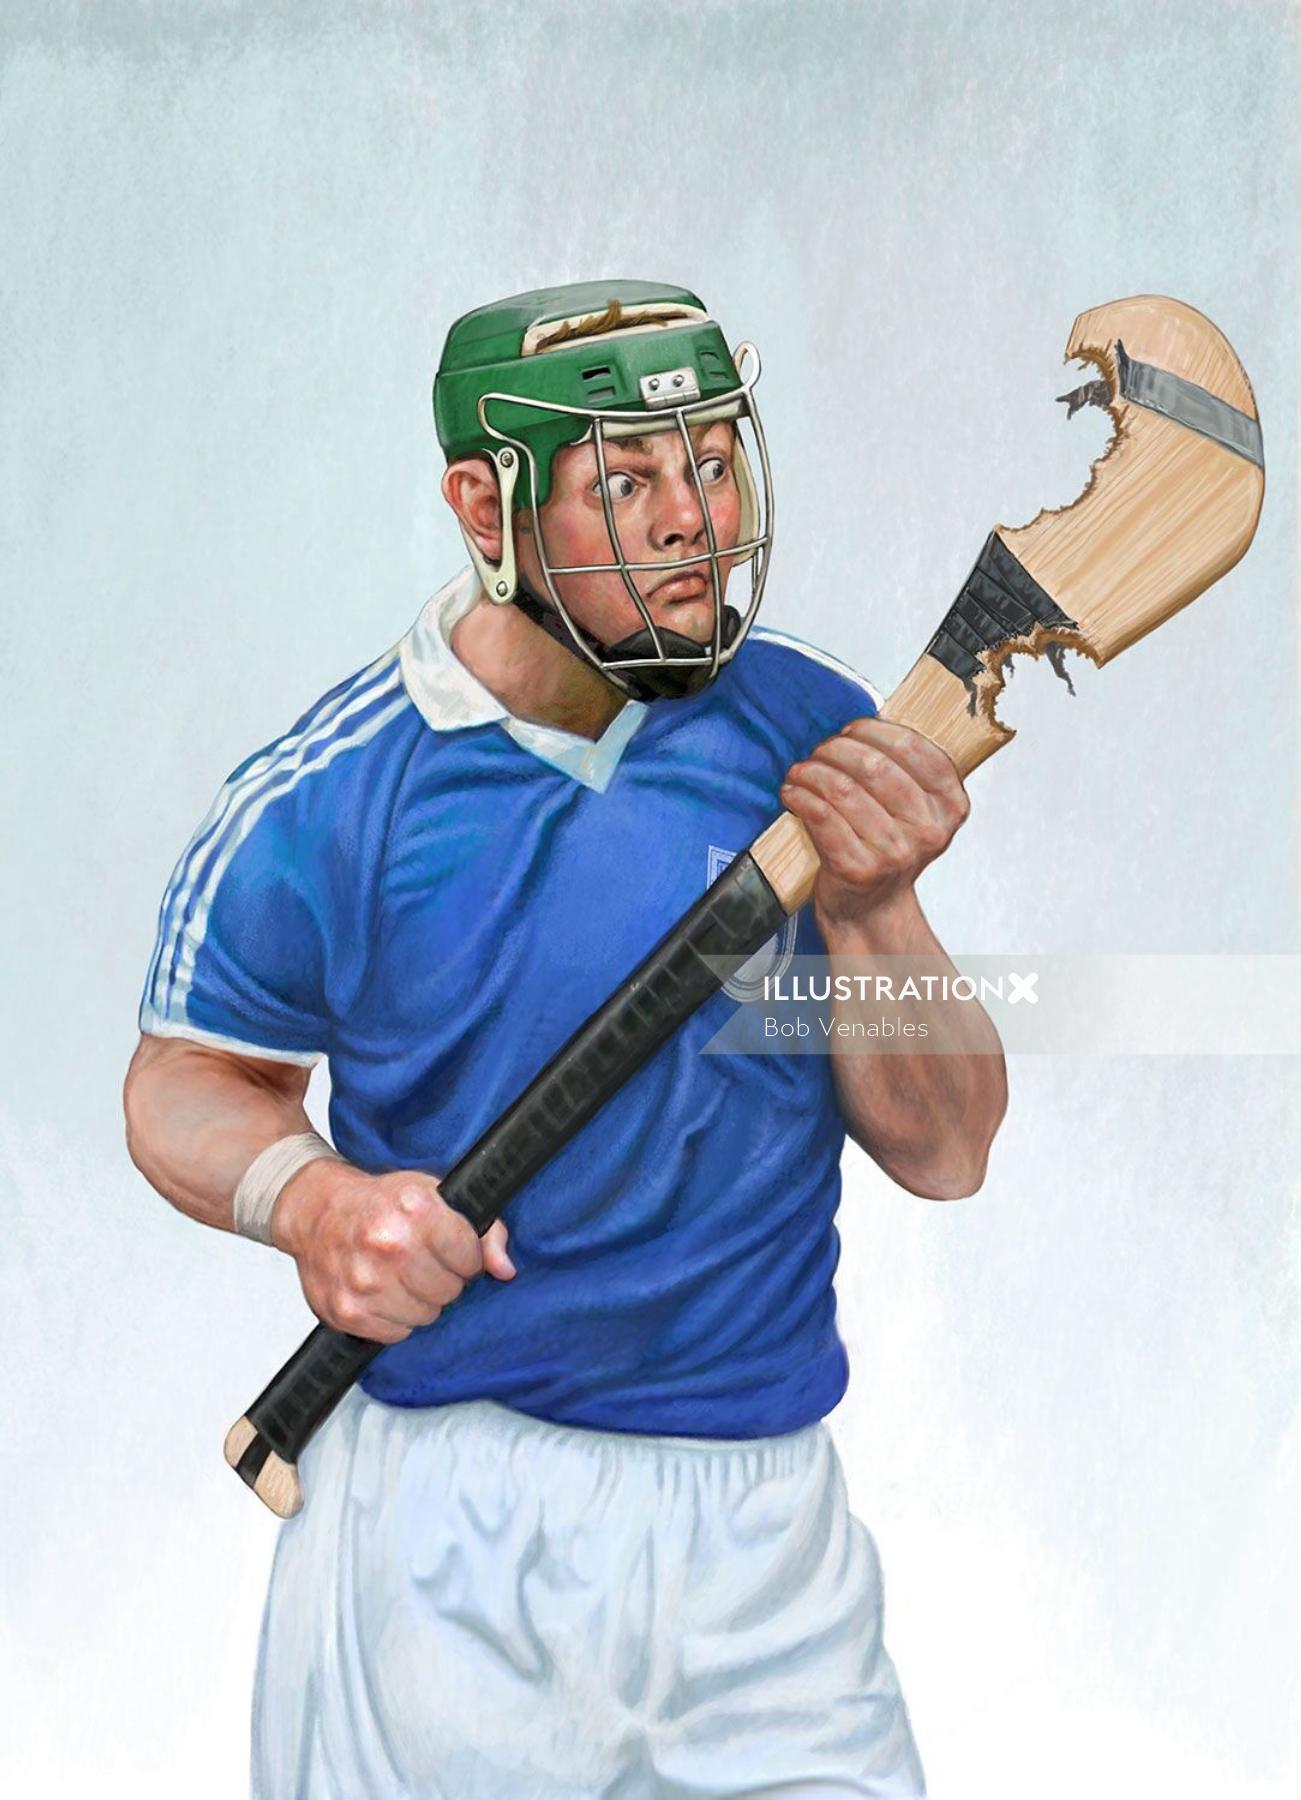 Arte do pôster do jogador de esporte para o jornal The Irish Examiner